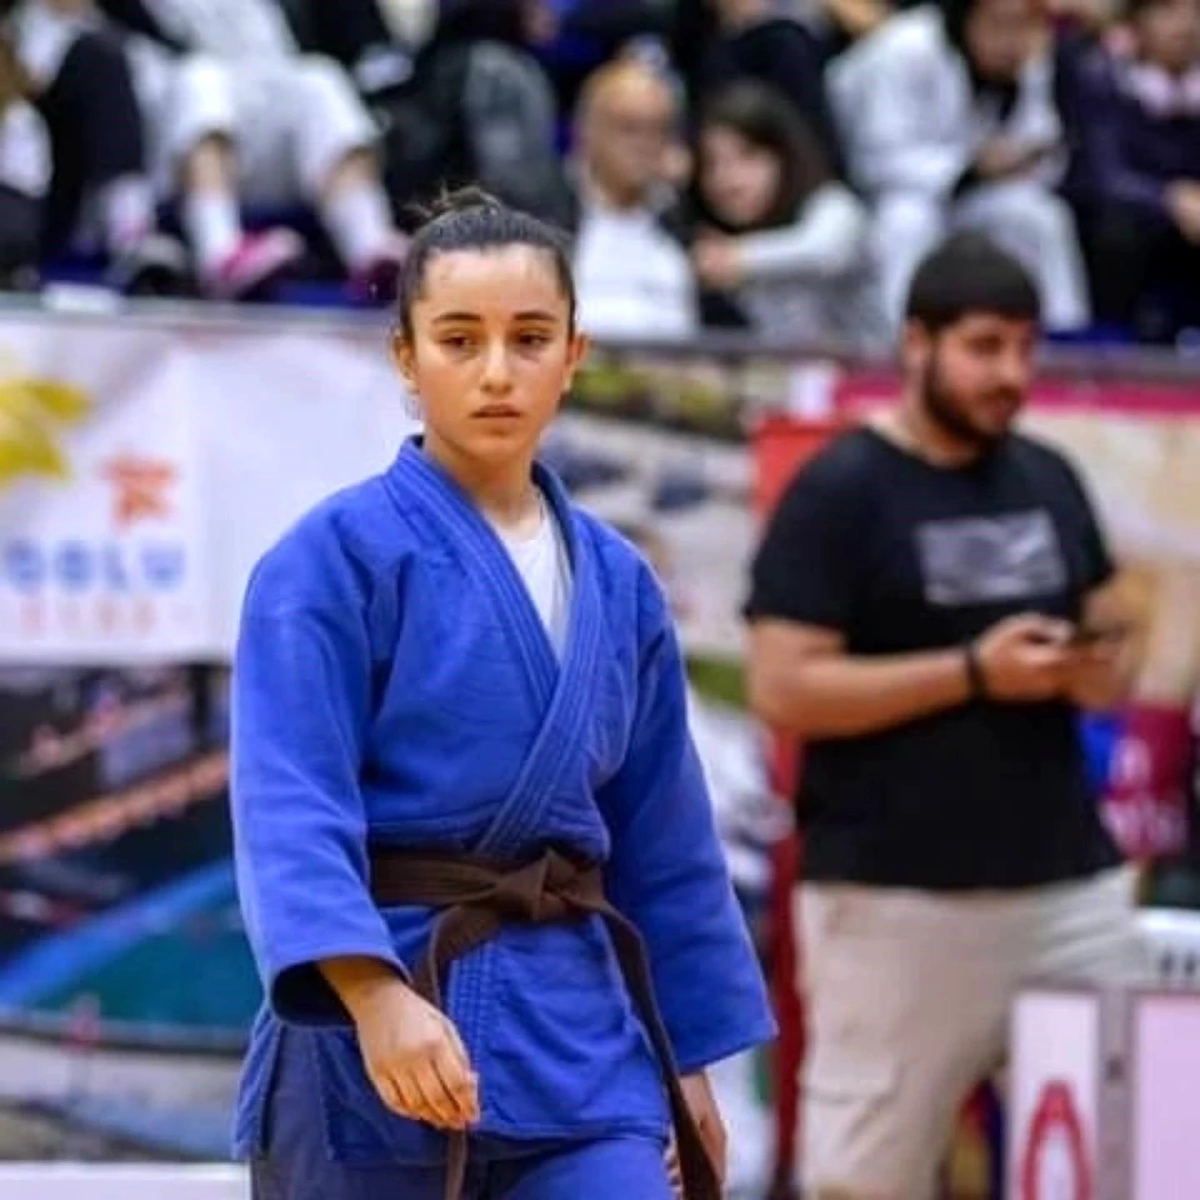 Bilecikli Milli Judocu Ecrin Benlioğlu, Türkiye’yi temsil etmeye hazırlanıyor